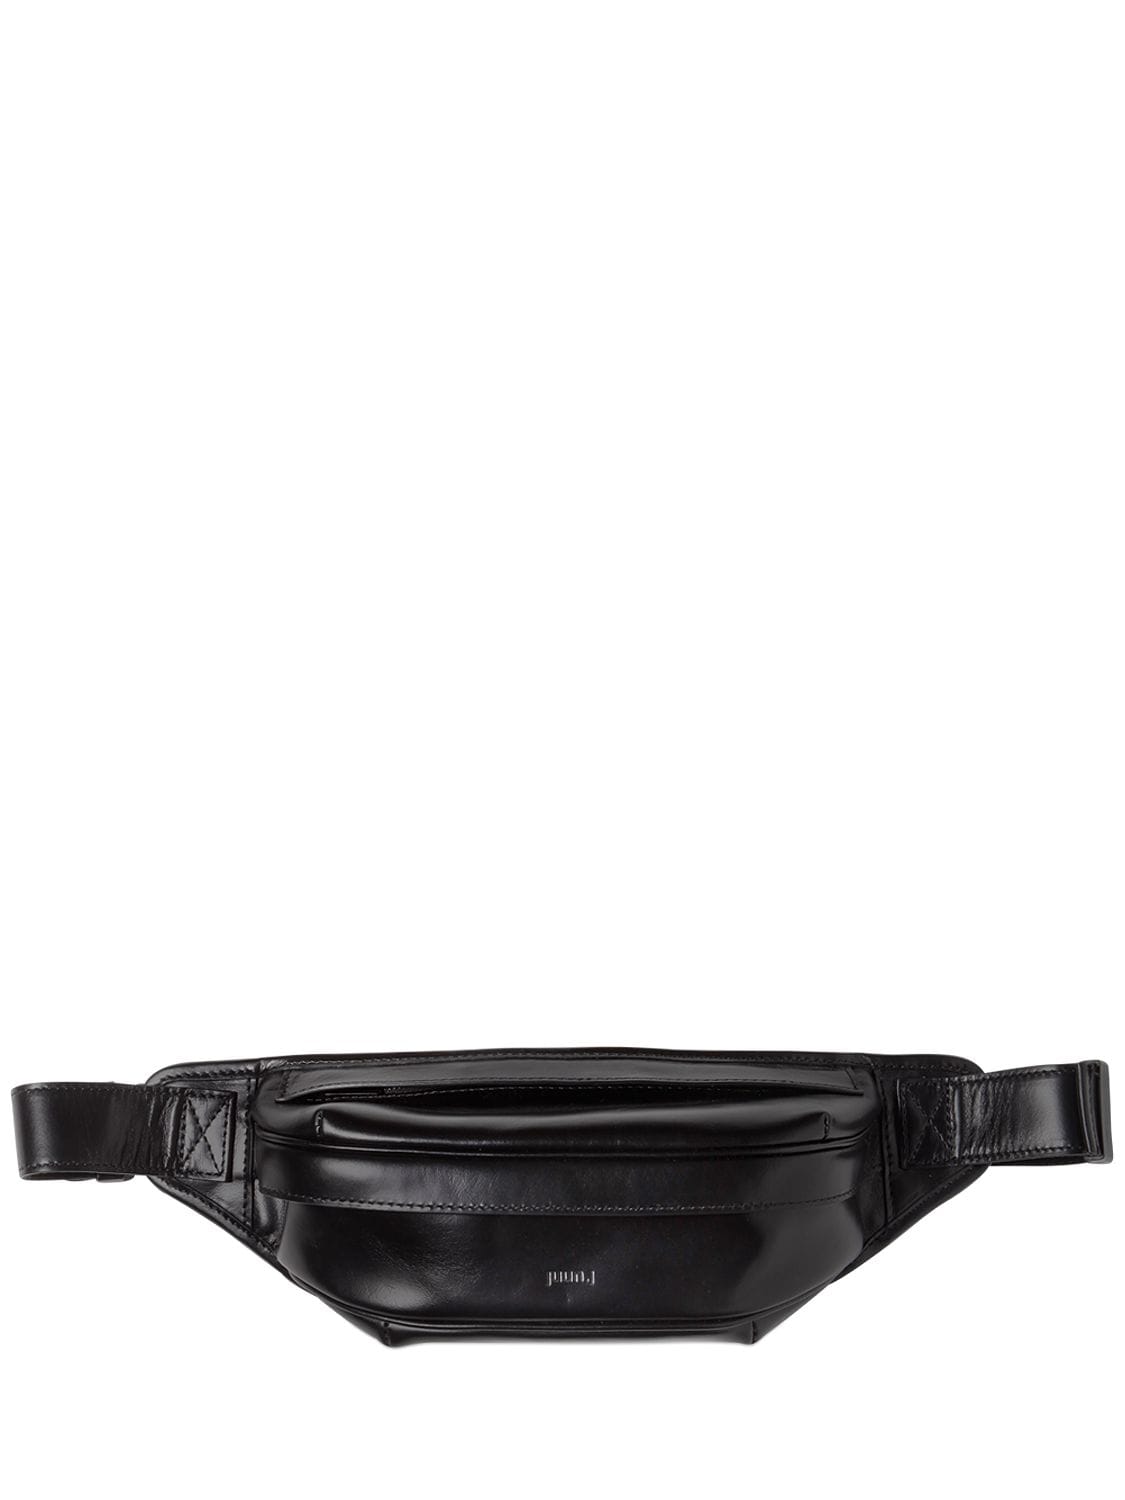 Juun.j Leather Belt Pack In Black